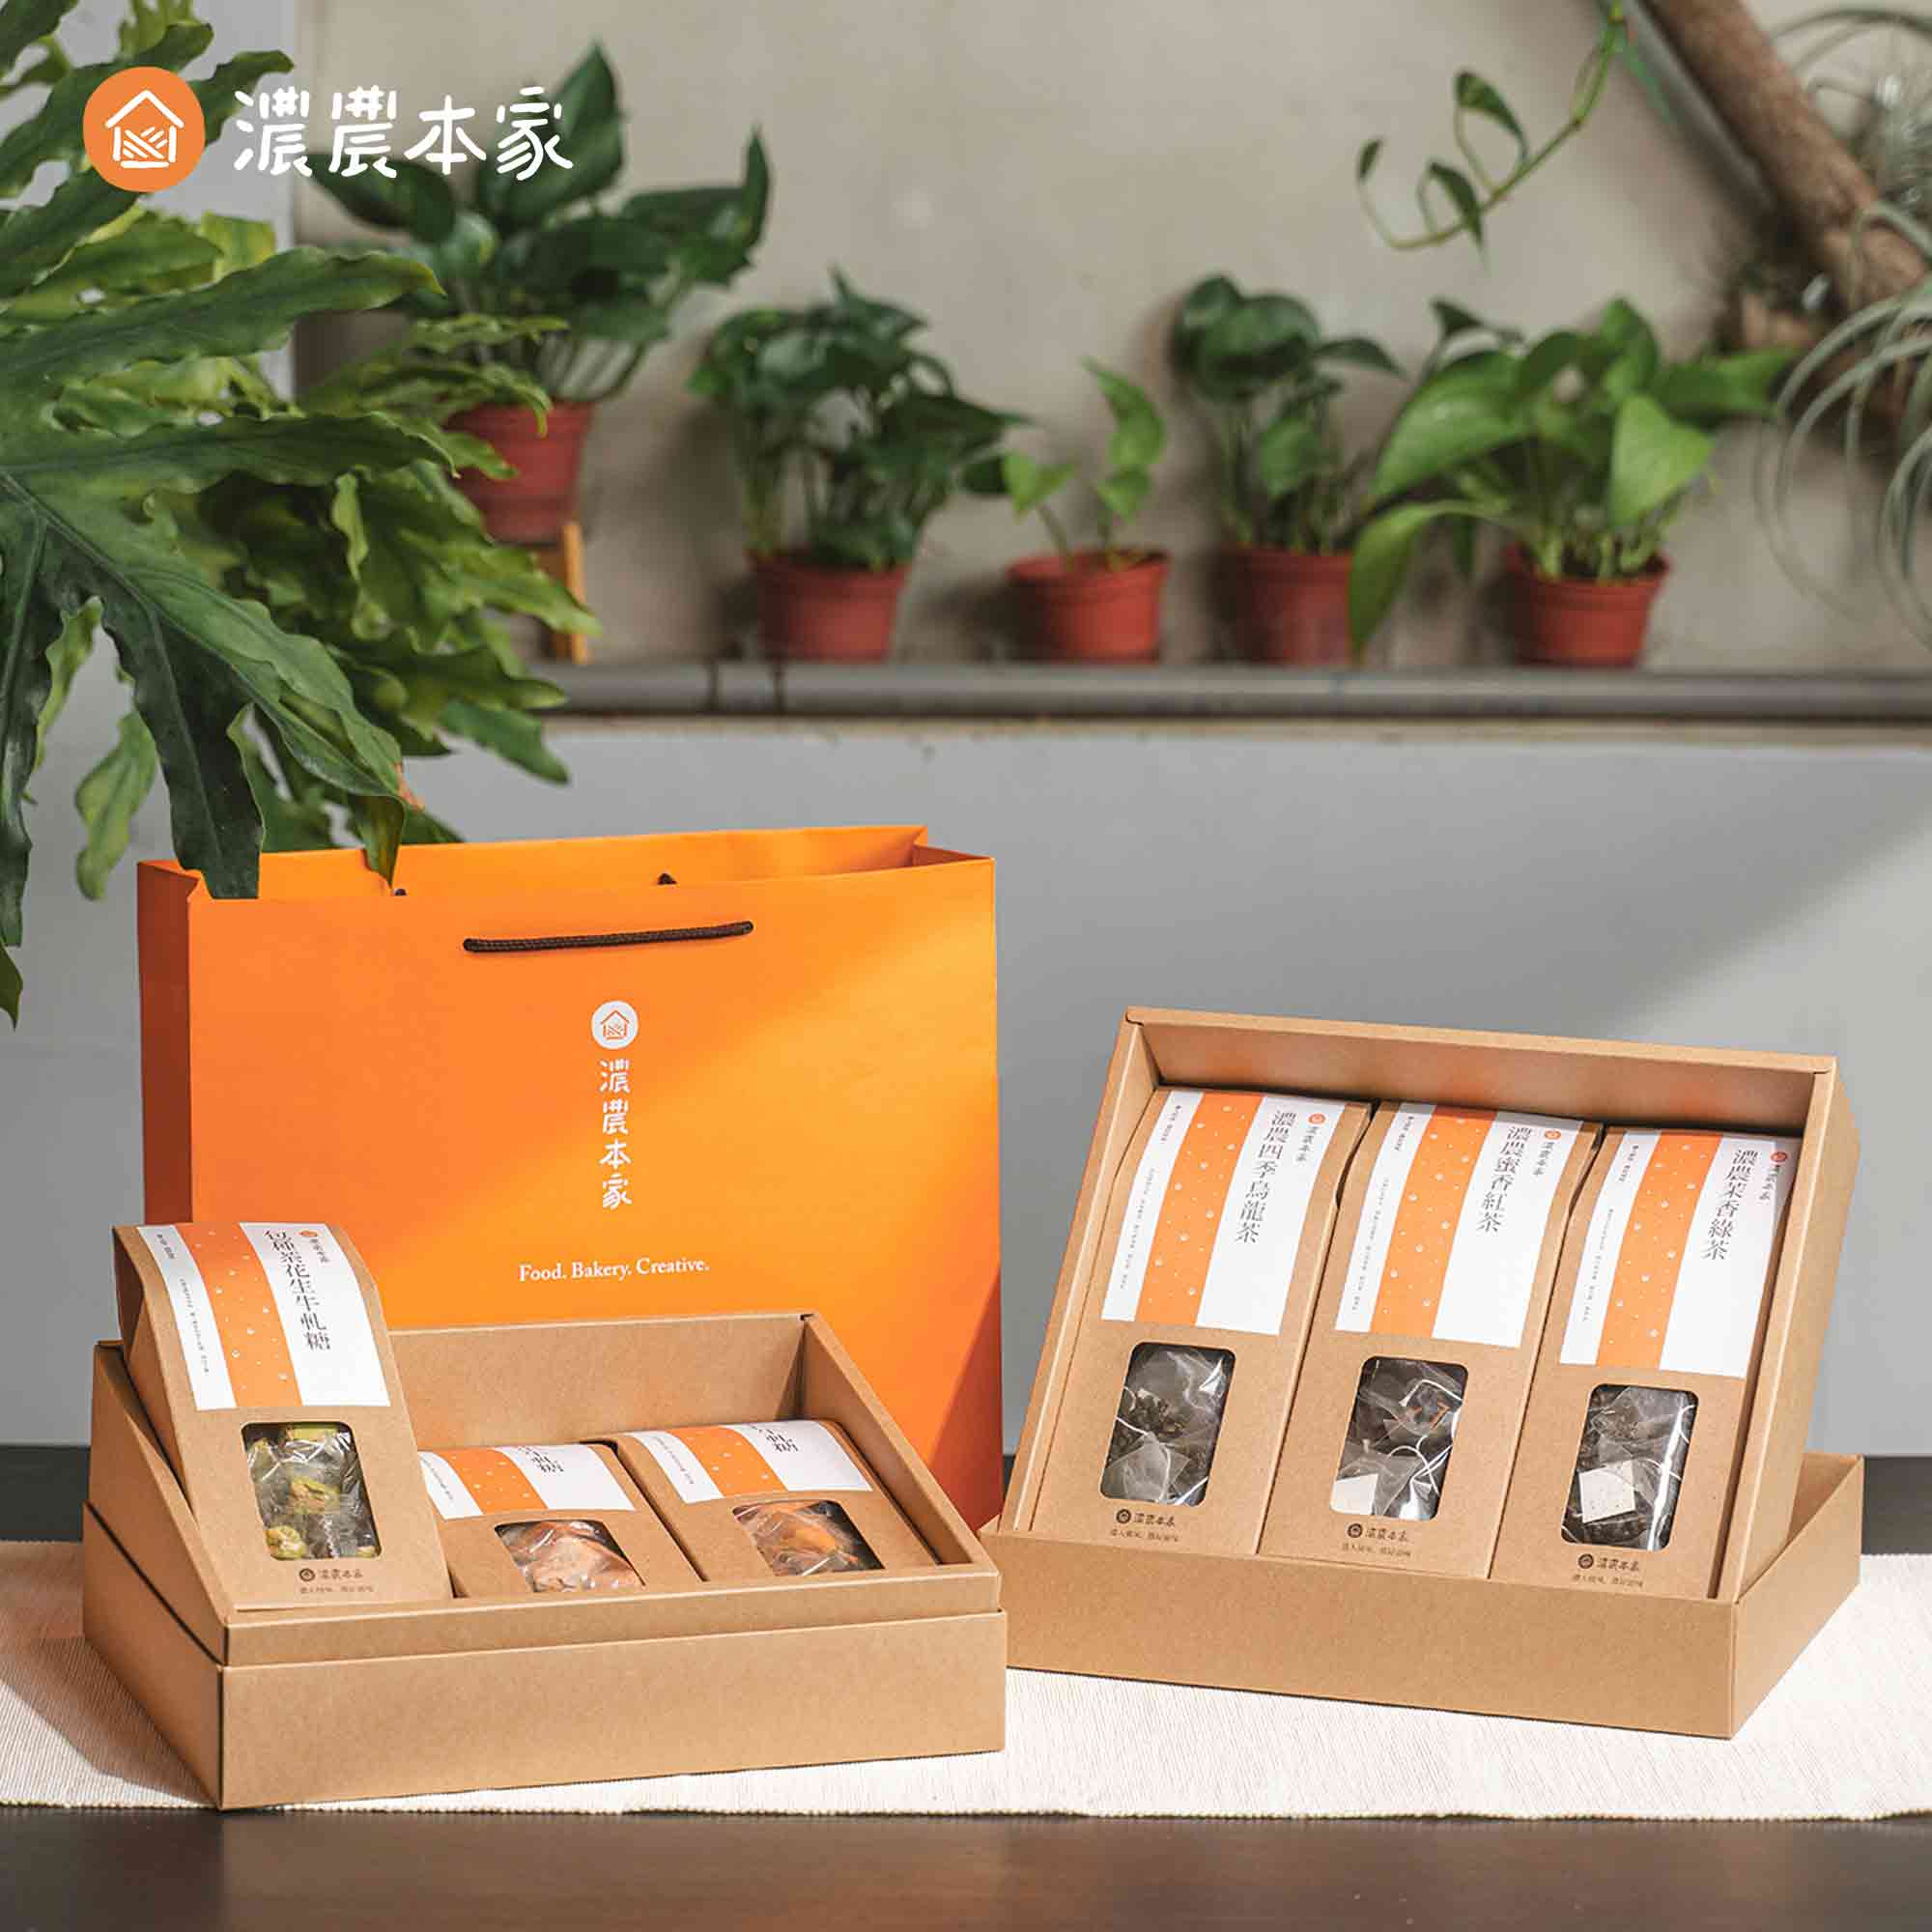 台灣常溫伴手禮推薦不用冷藏的人氣素食禮盒